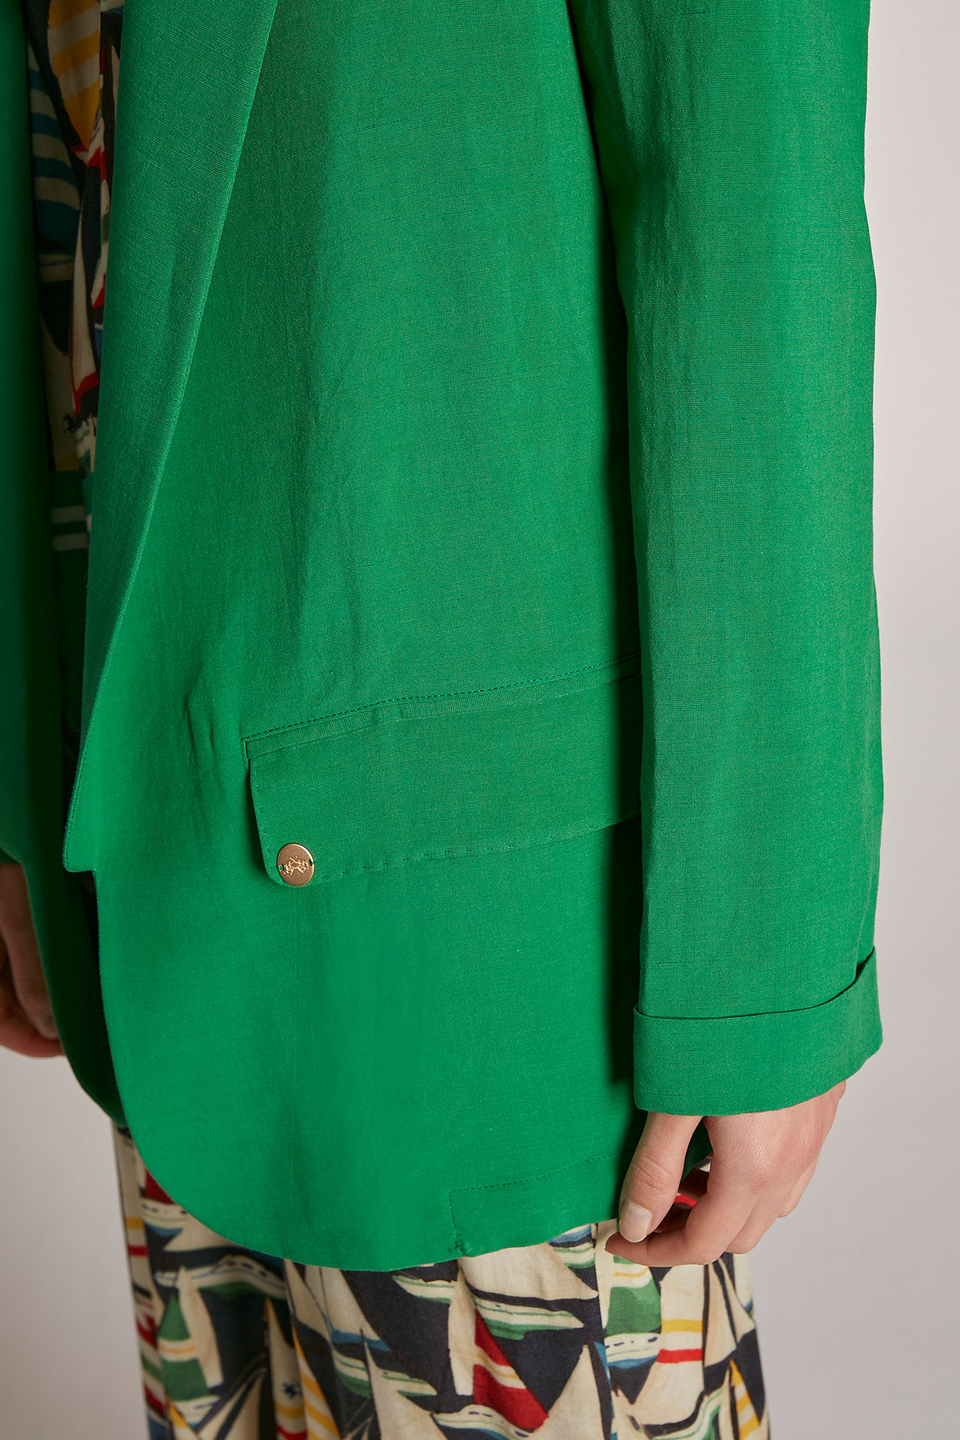 Giacca da donna modello blazer morbido regular fit - La Martina - Official Online Shop